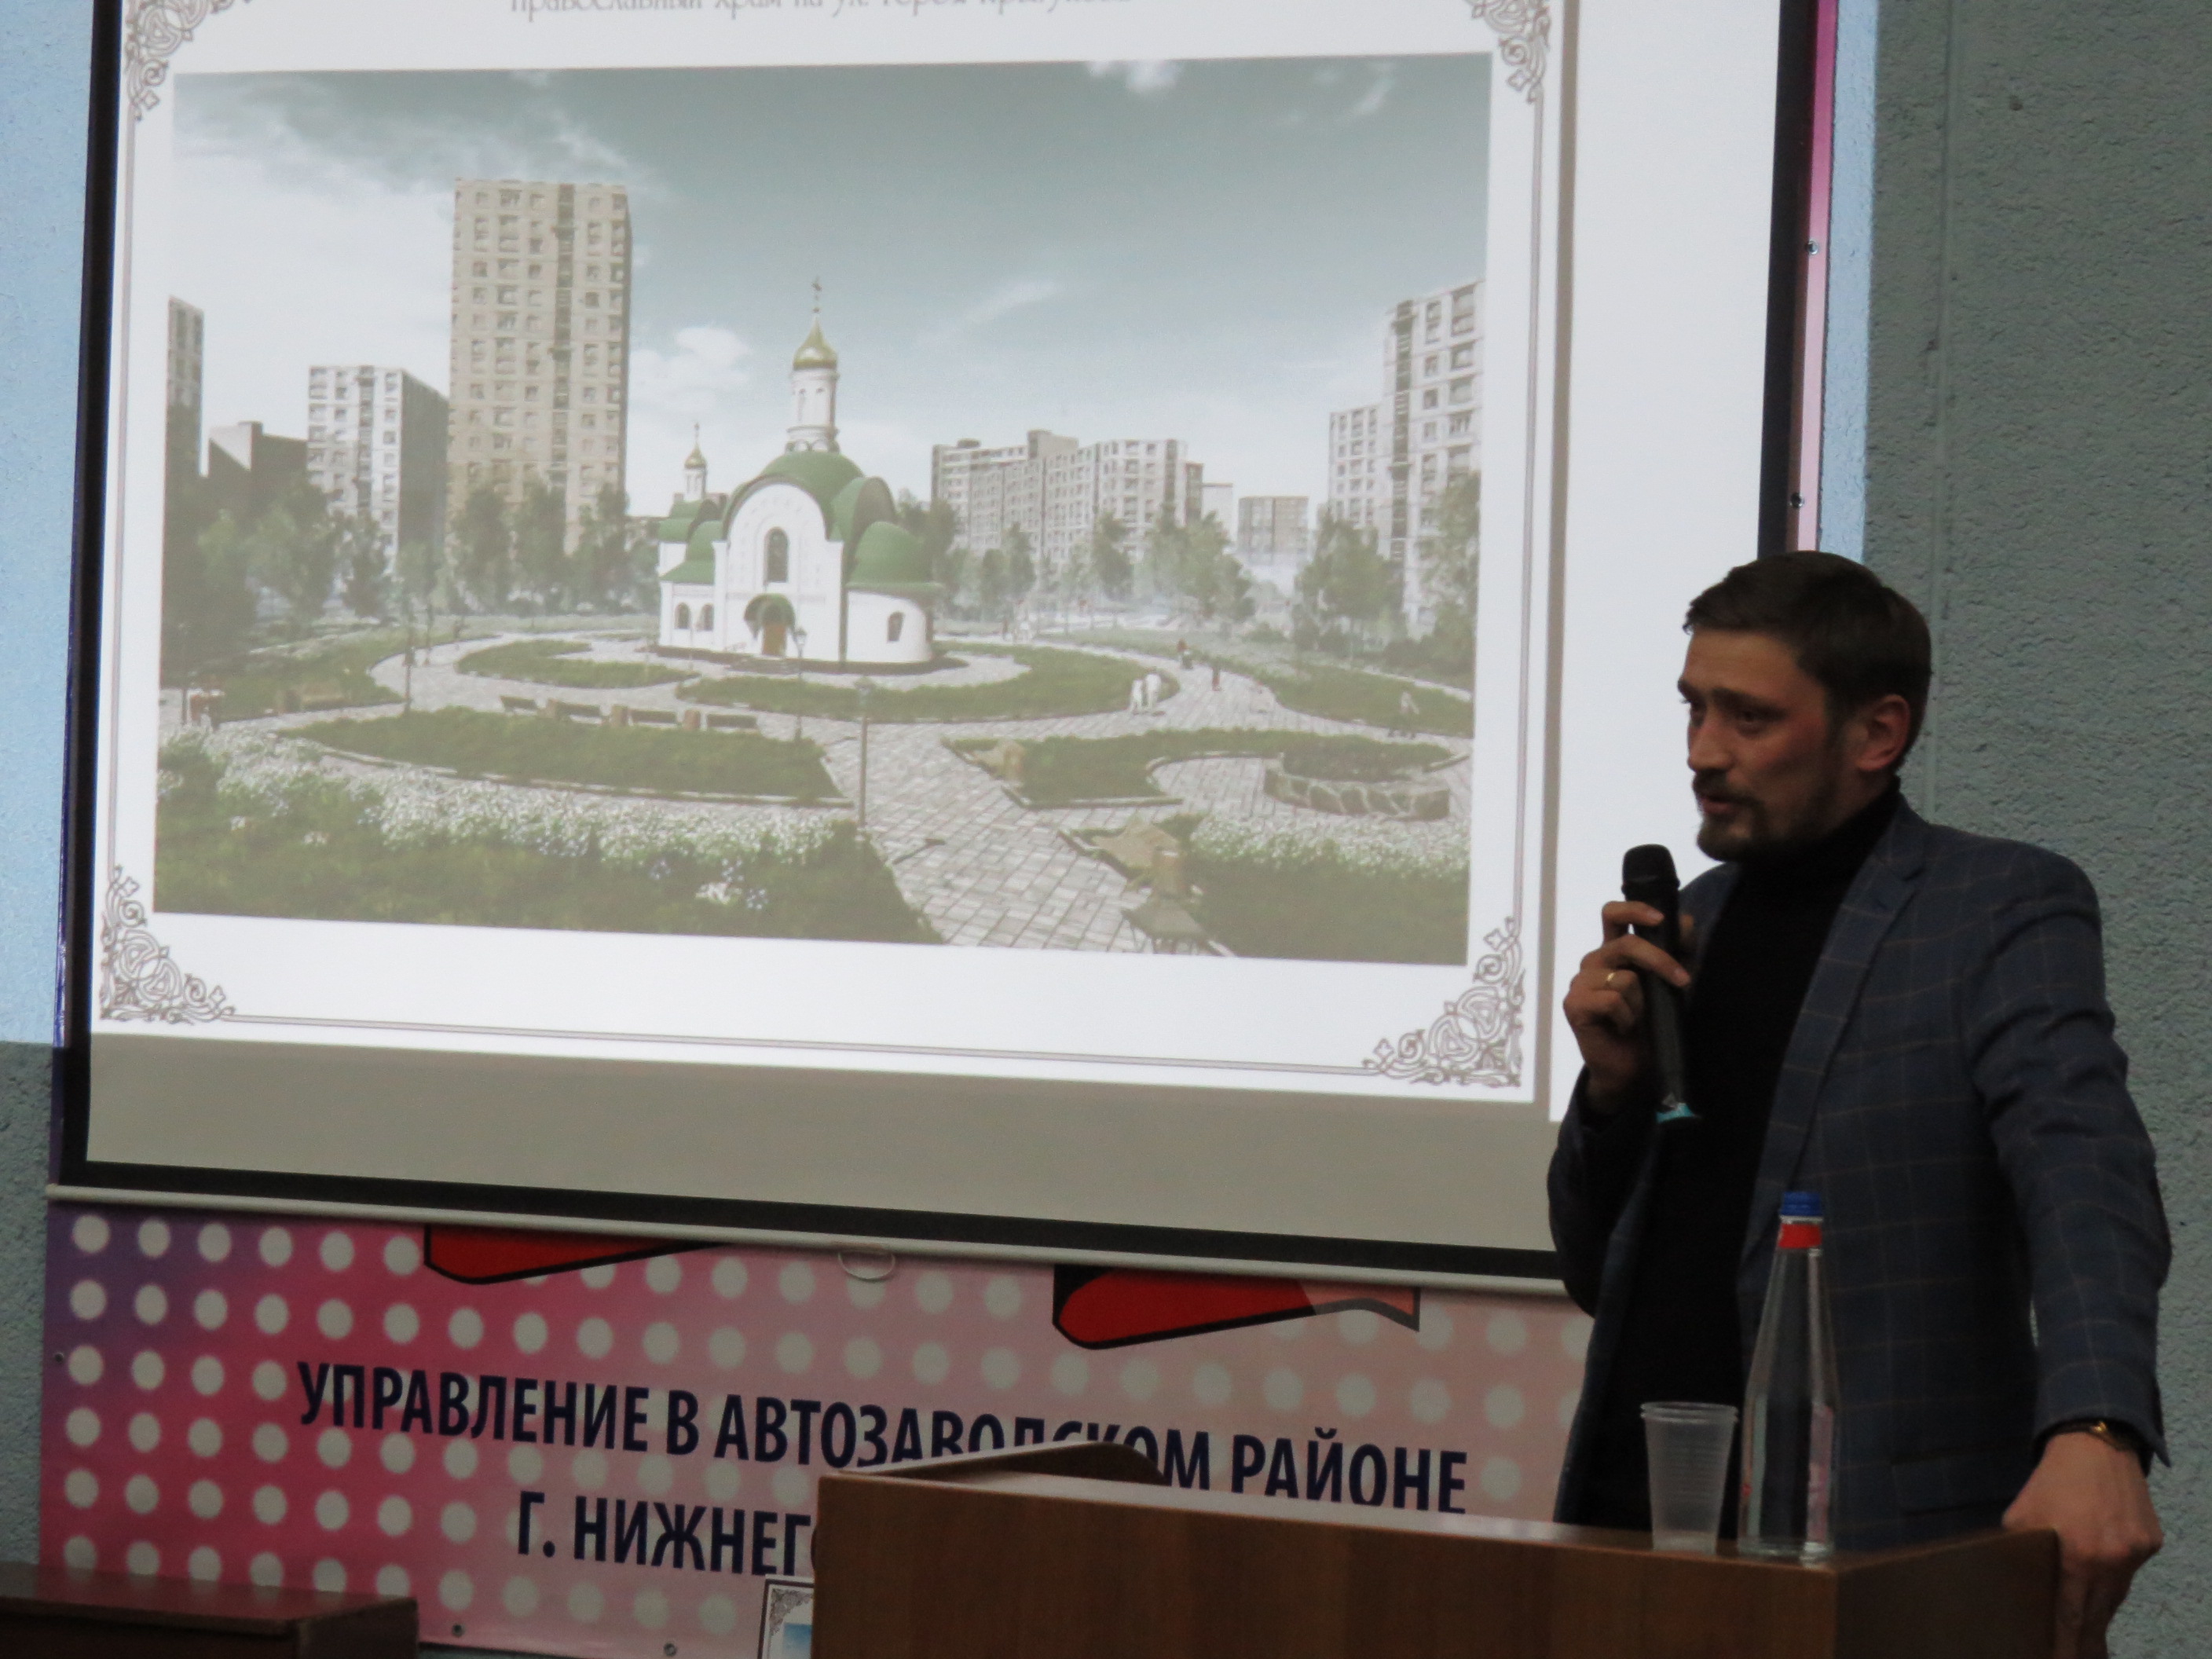 Нижегородцы обсудили строительство часовни в сквере милиционеров на улице Прыгунова - фото 1